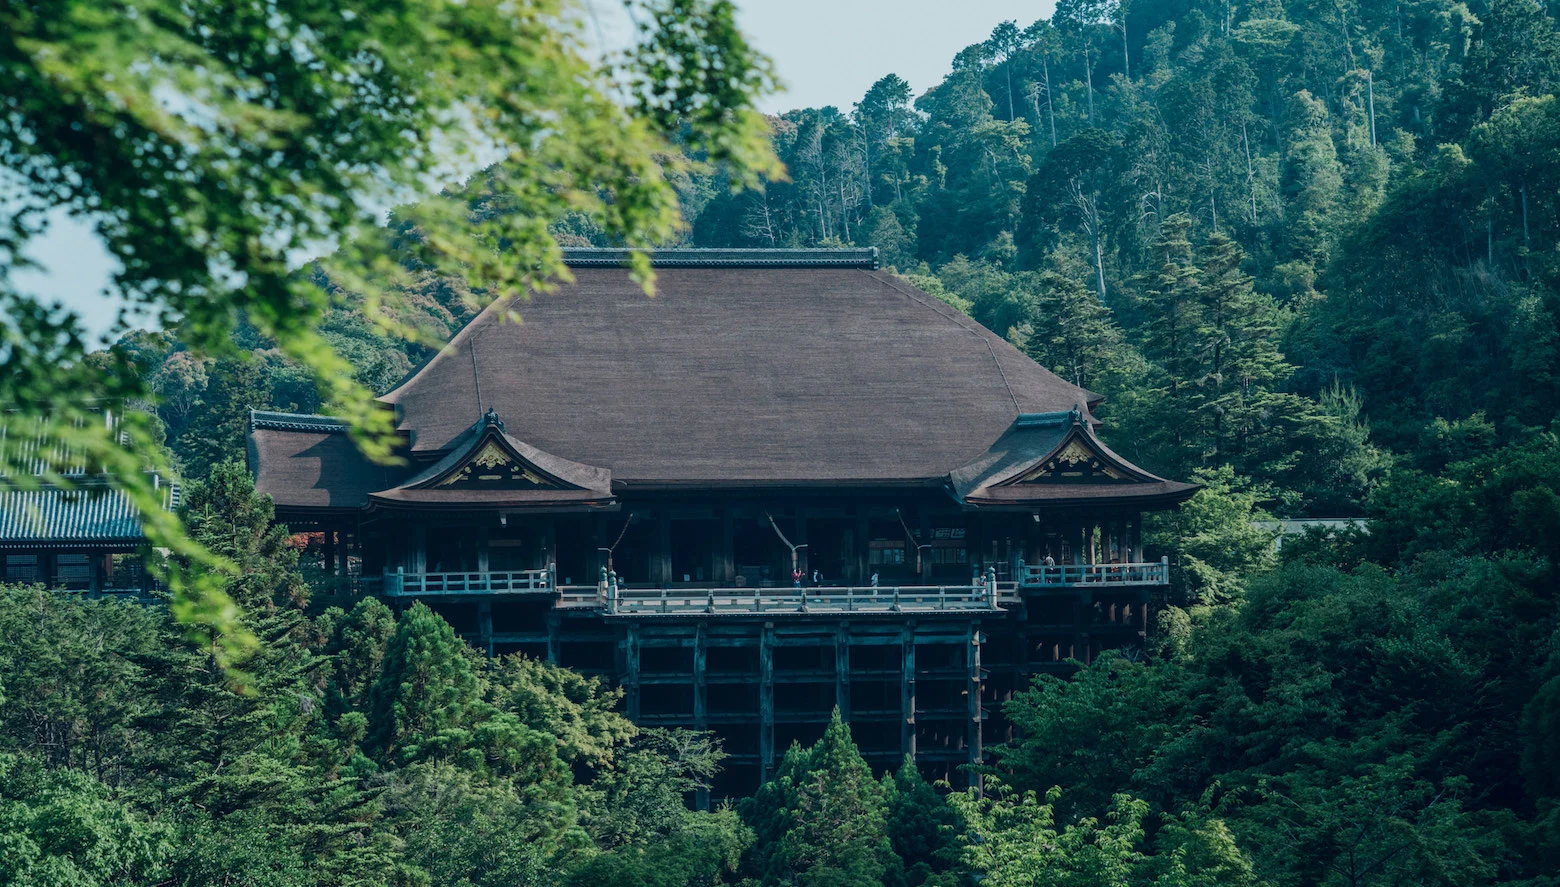 Sân khấu gỗ trước sảnh chính nổi tiếng nhất ở Kiyomizu